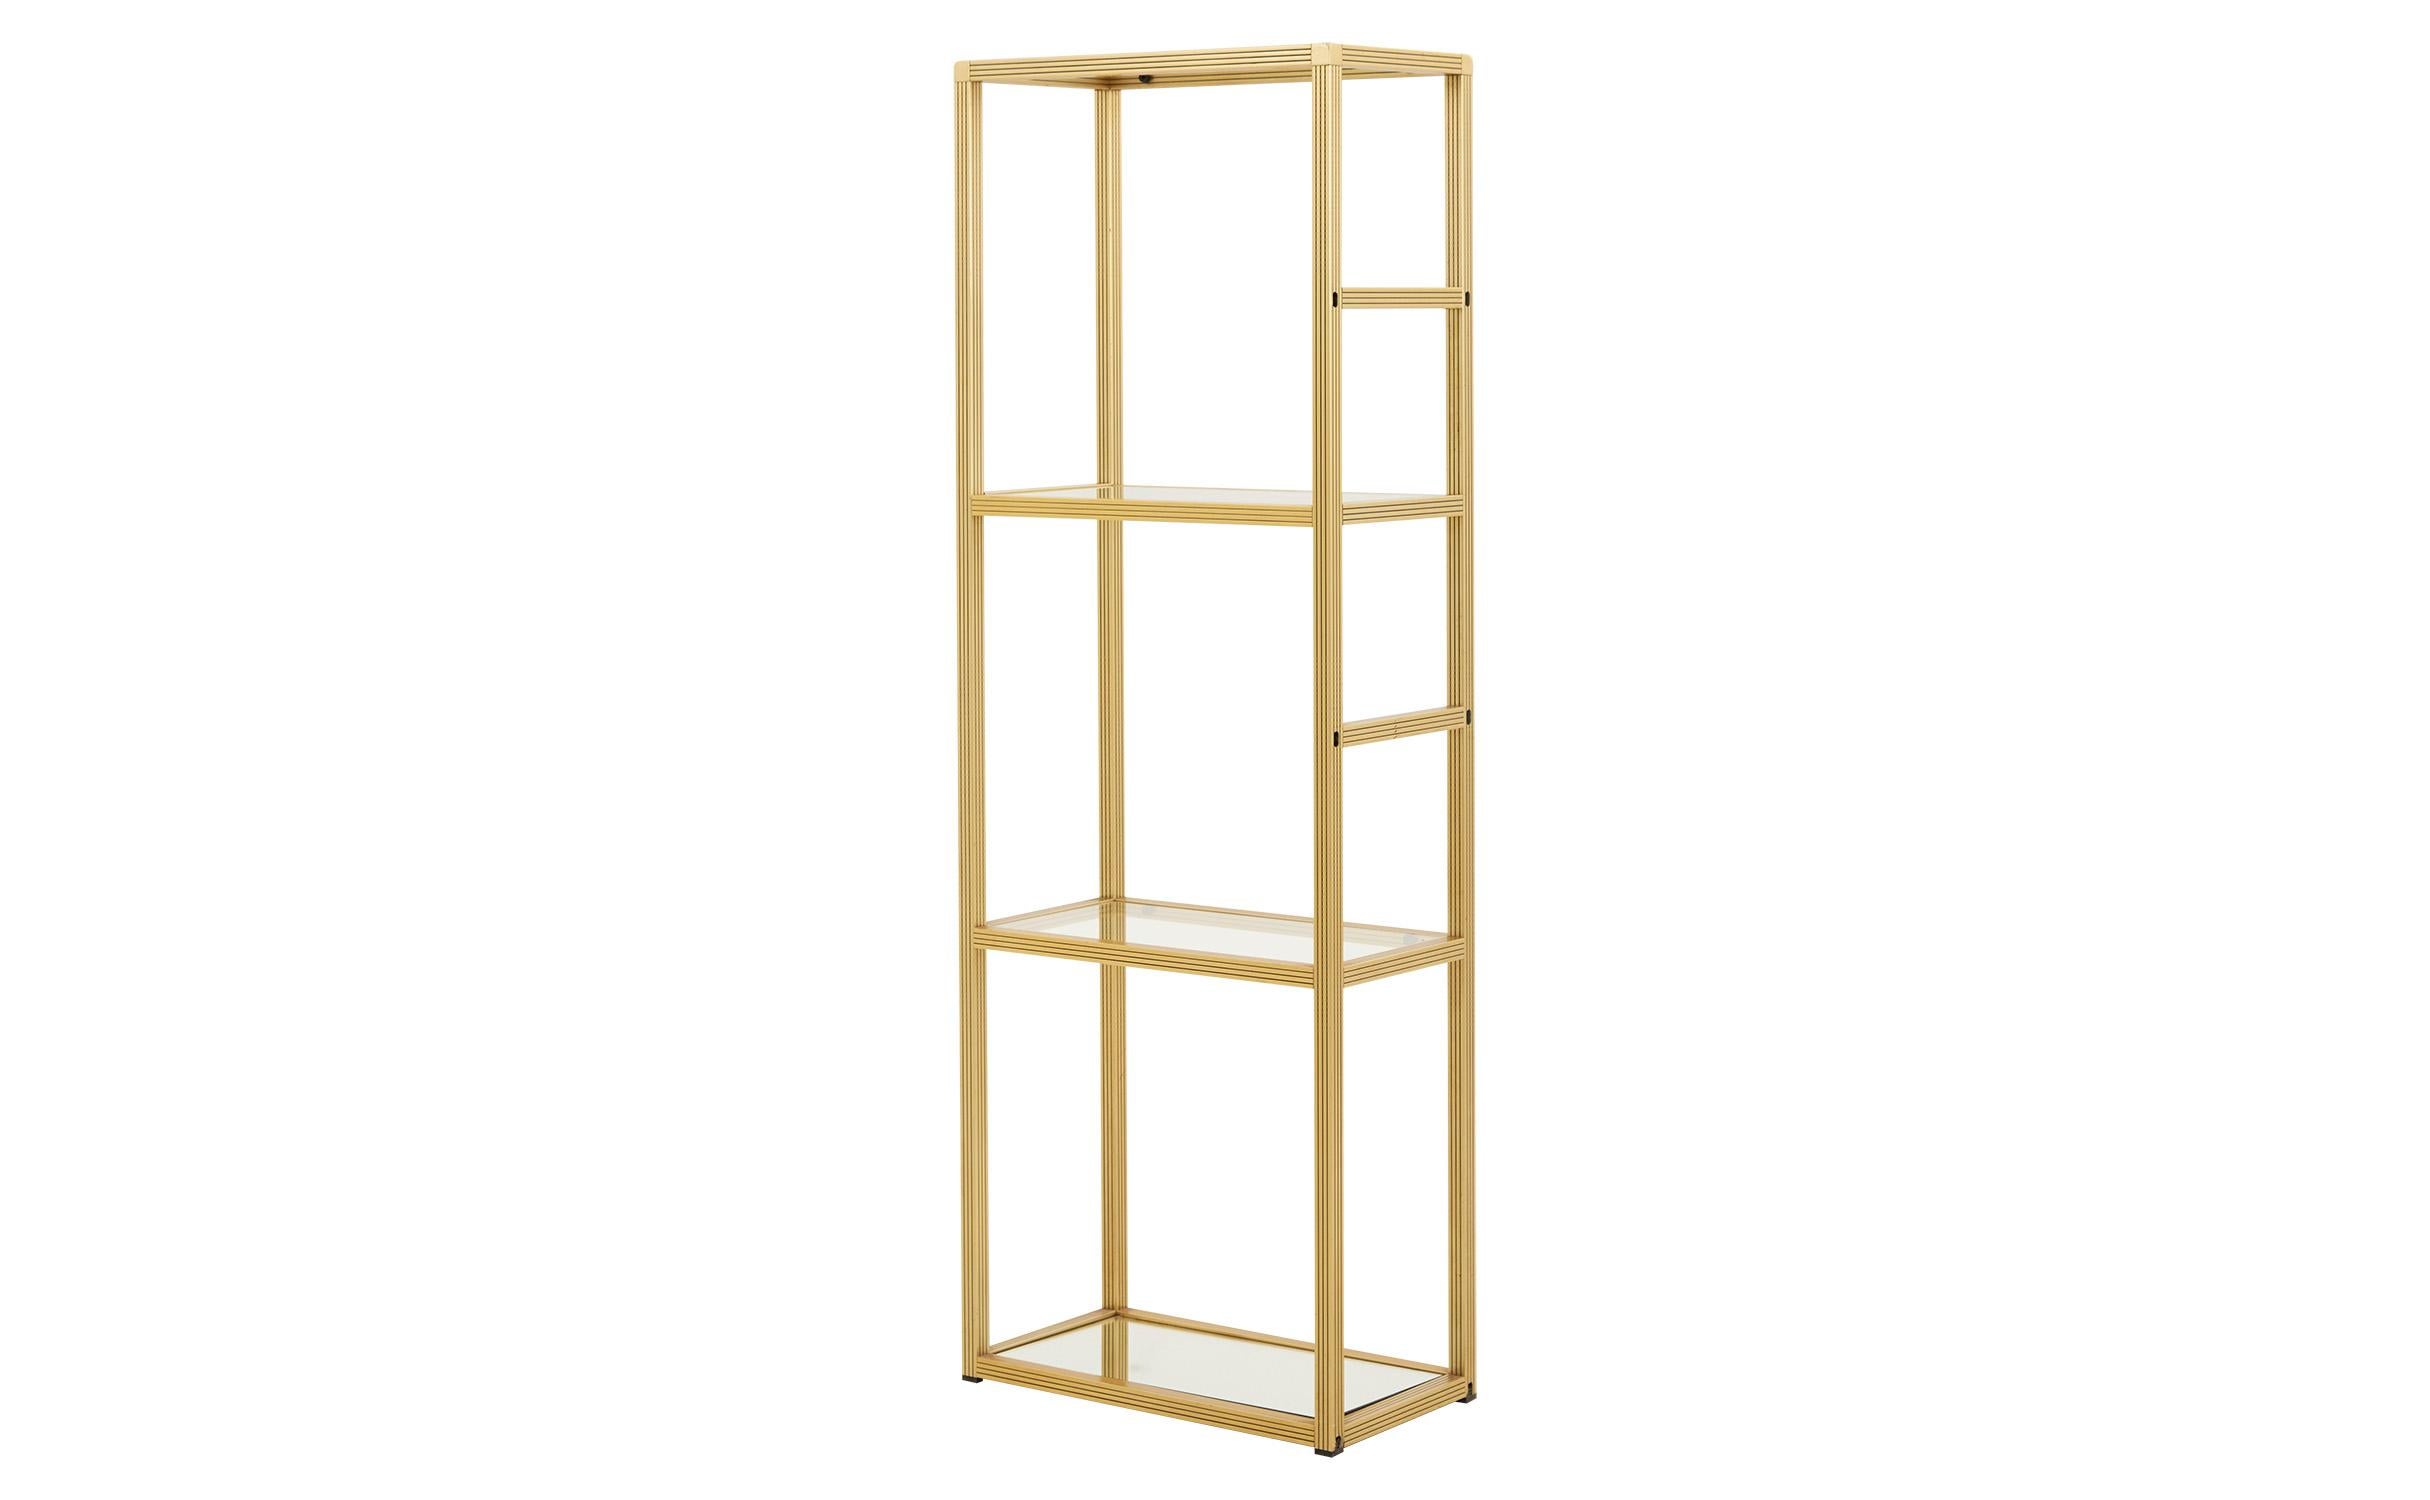 • Brass frame
• Glass shelves
• Mirrored bottom shelf
• Mid-20th century
• France
• Measures 21.75